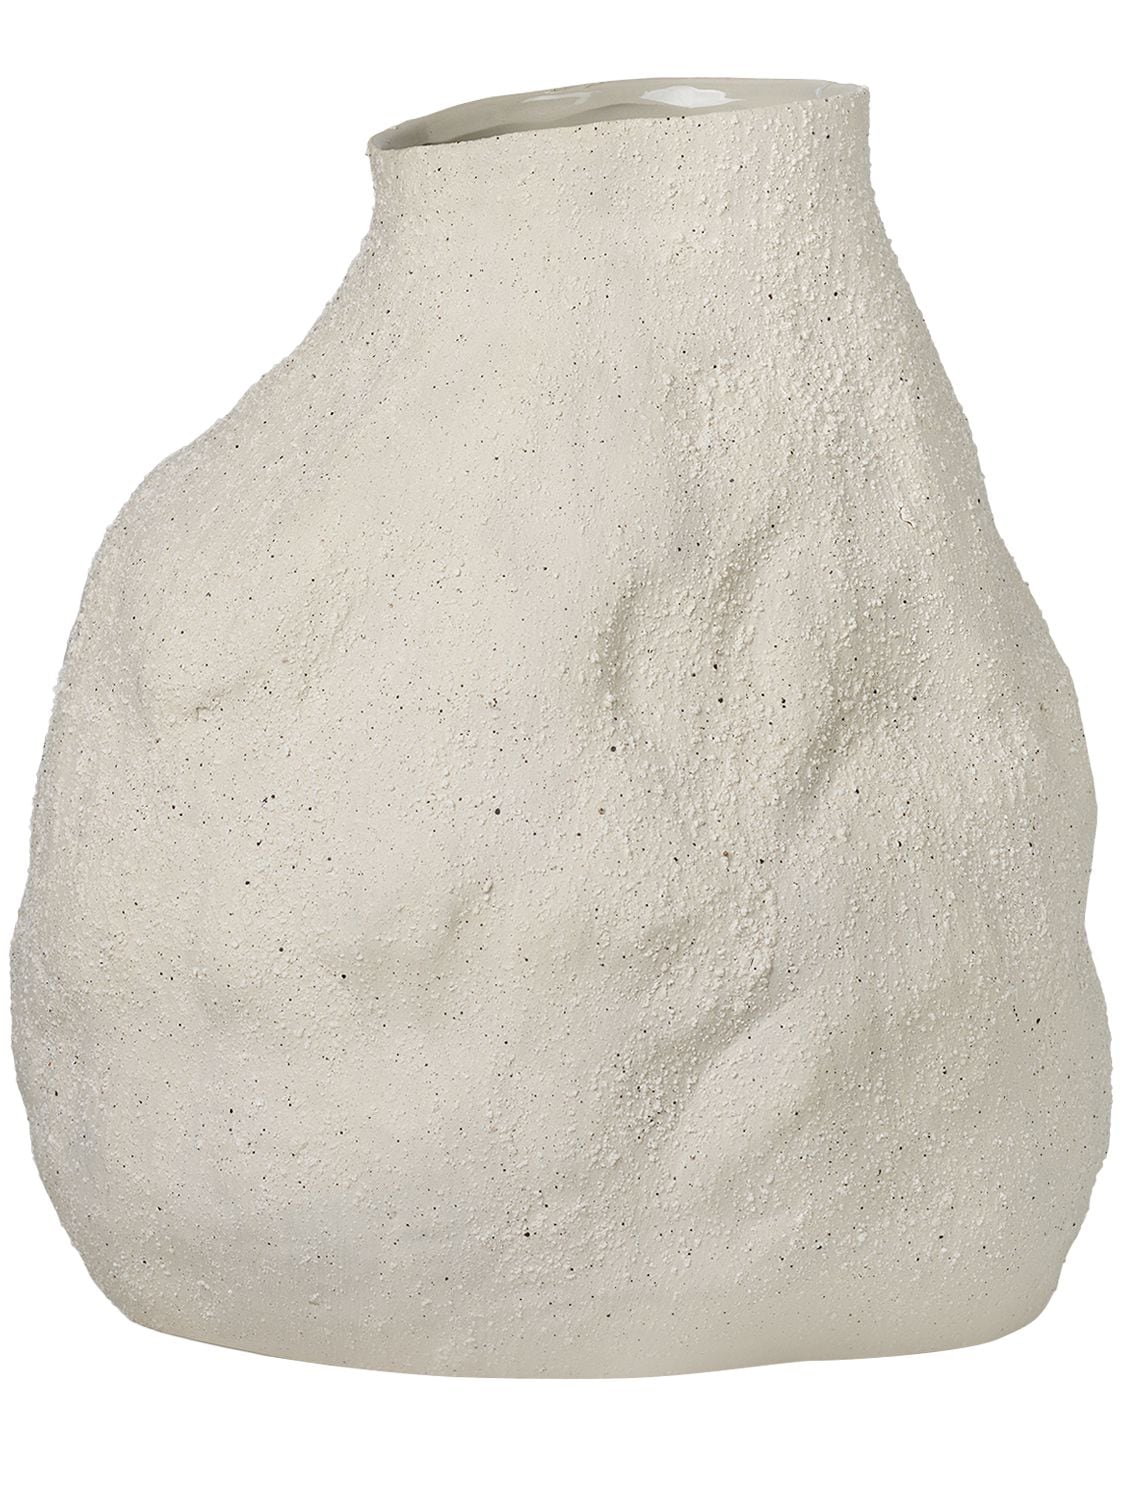 Image of Medium Vulca Stone Vase